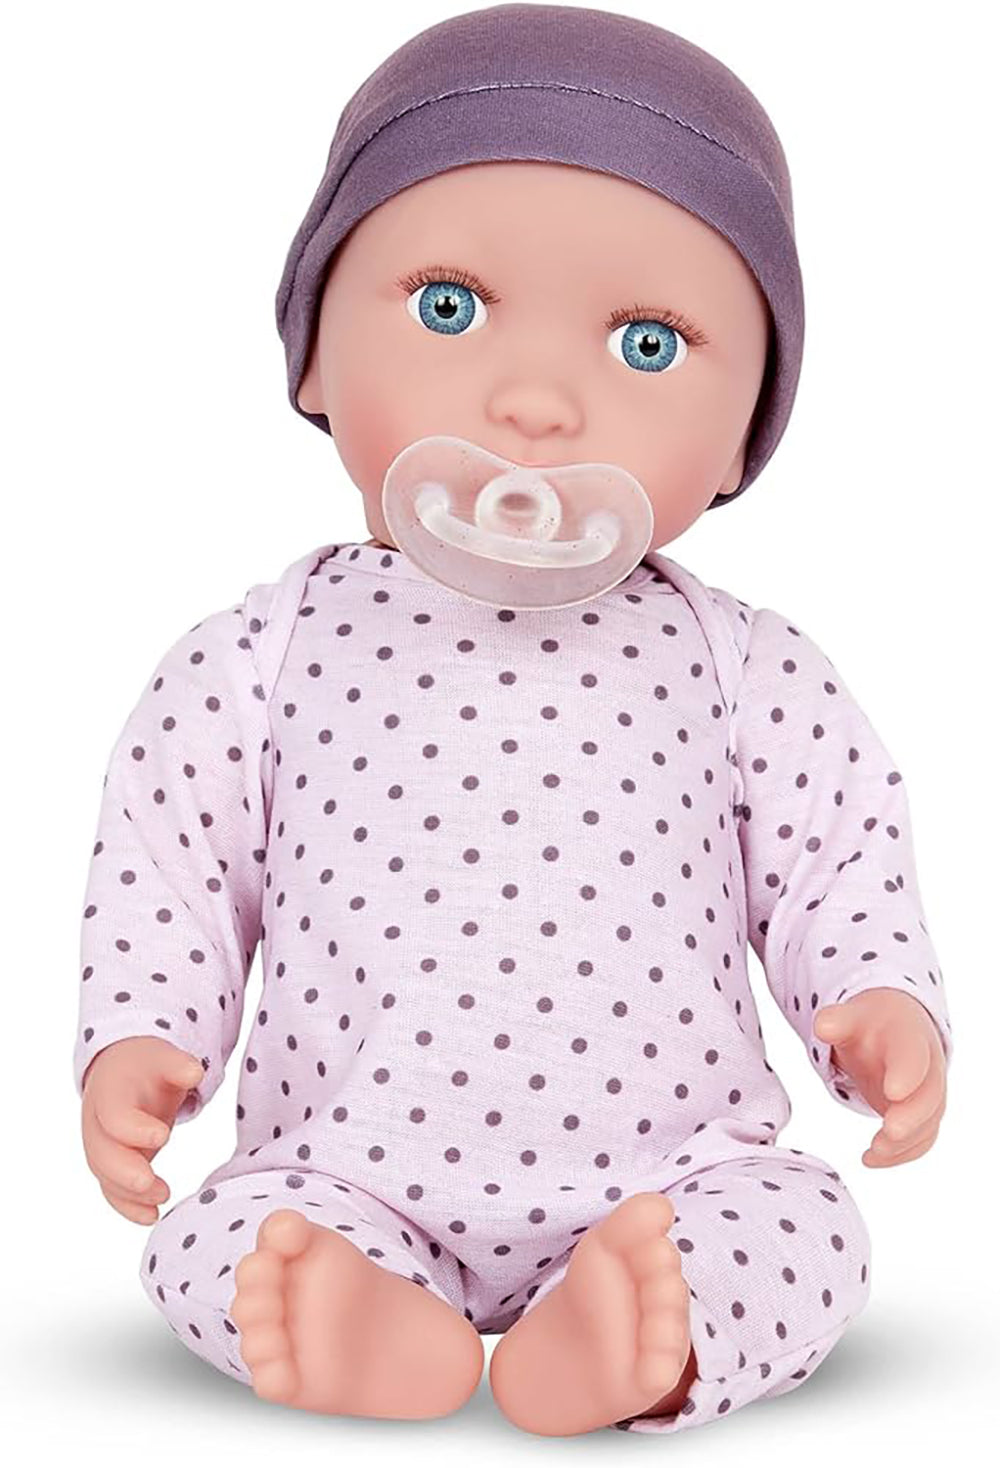 LullaBaby - 14"Baby Doll with Lilac Polka Dot Pajamas